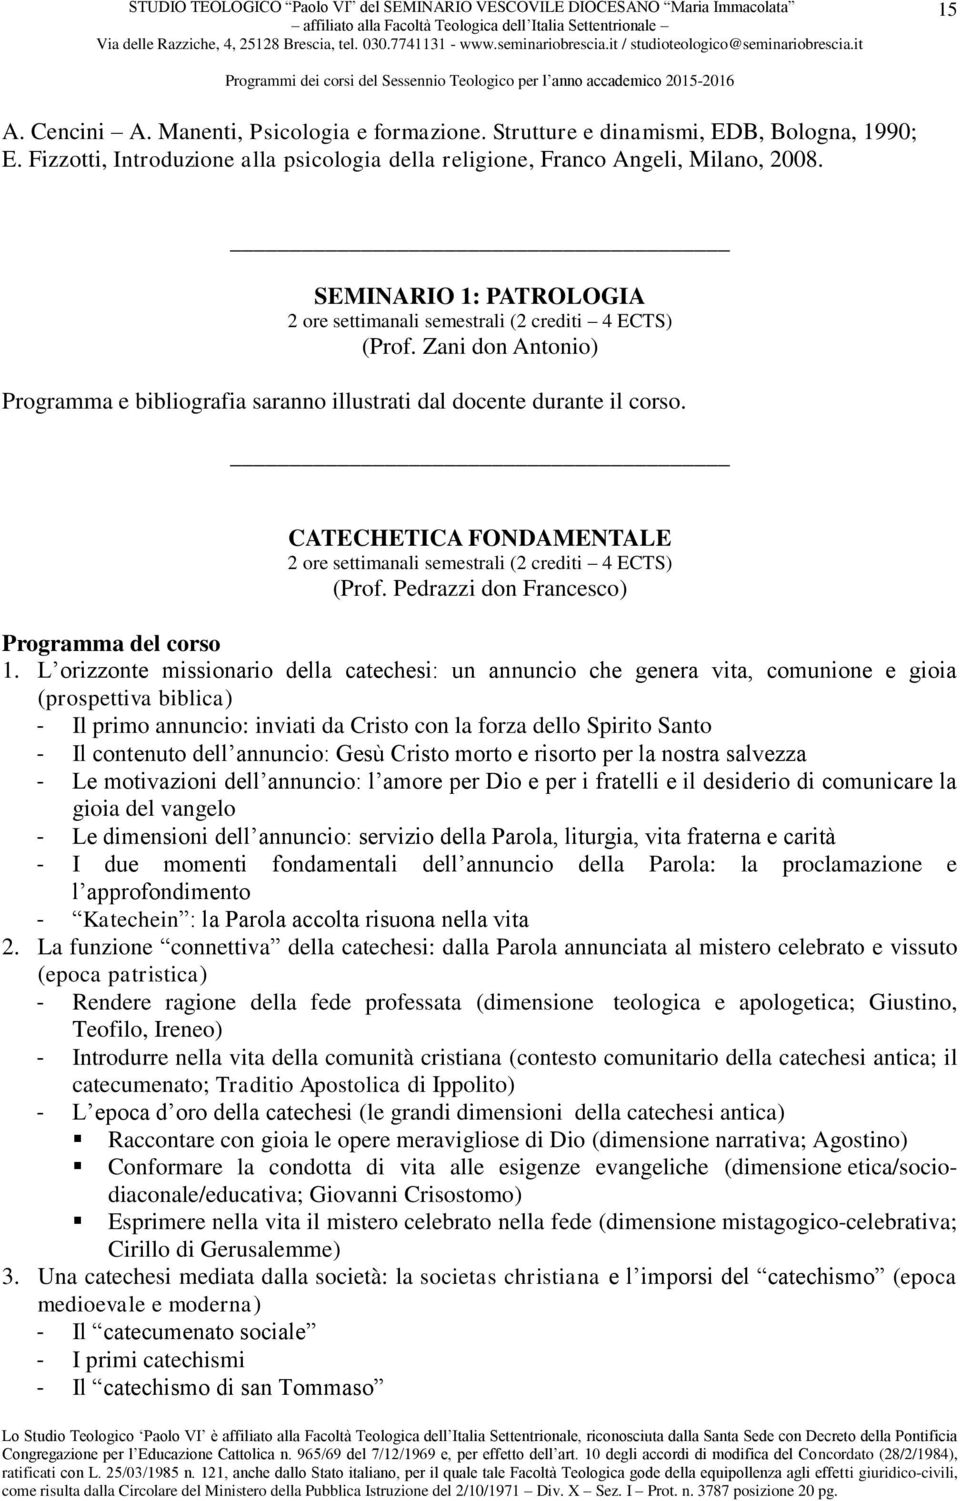 CATECHETICA FONDAMENTALE 2 ore settimanali semestrali (2 crediti 4 ECTS) (Prof. Pedrazzi don Francesco) 1.